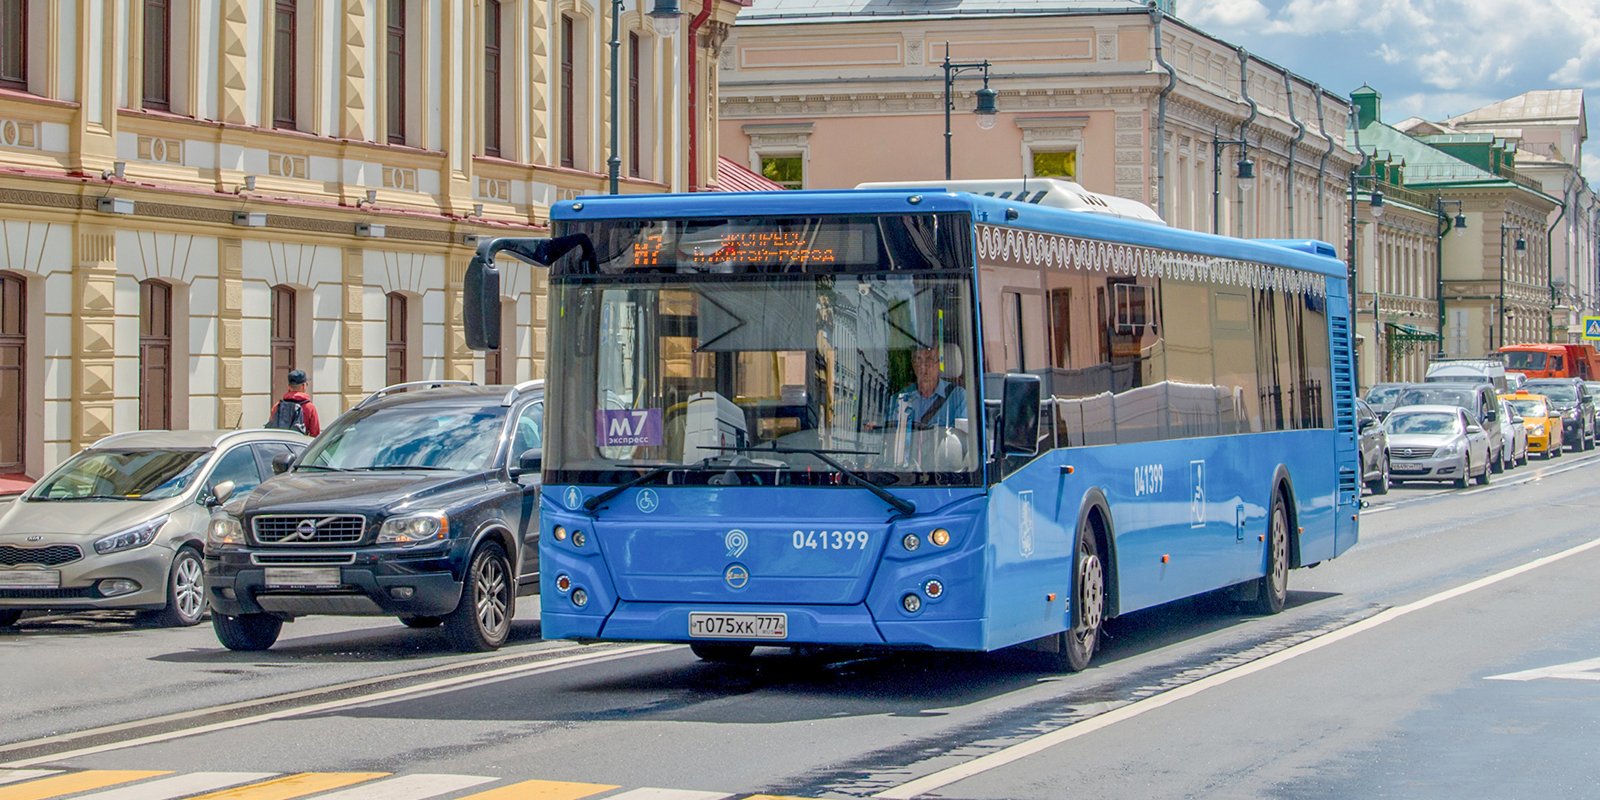 Московский автобус. Источник фото: Википедия, CC BY 4.0